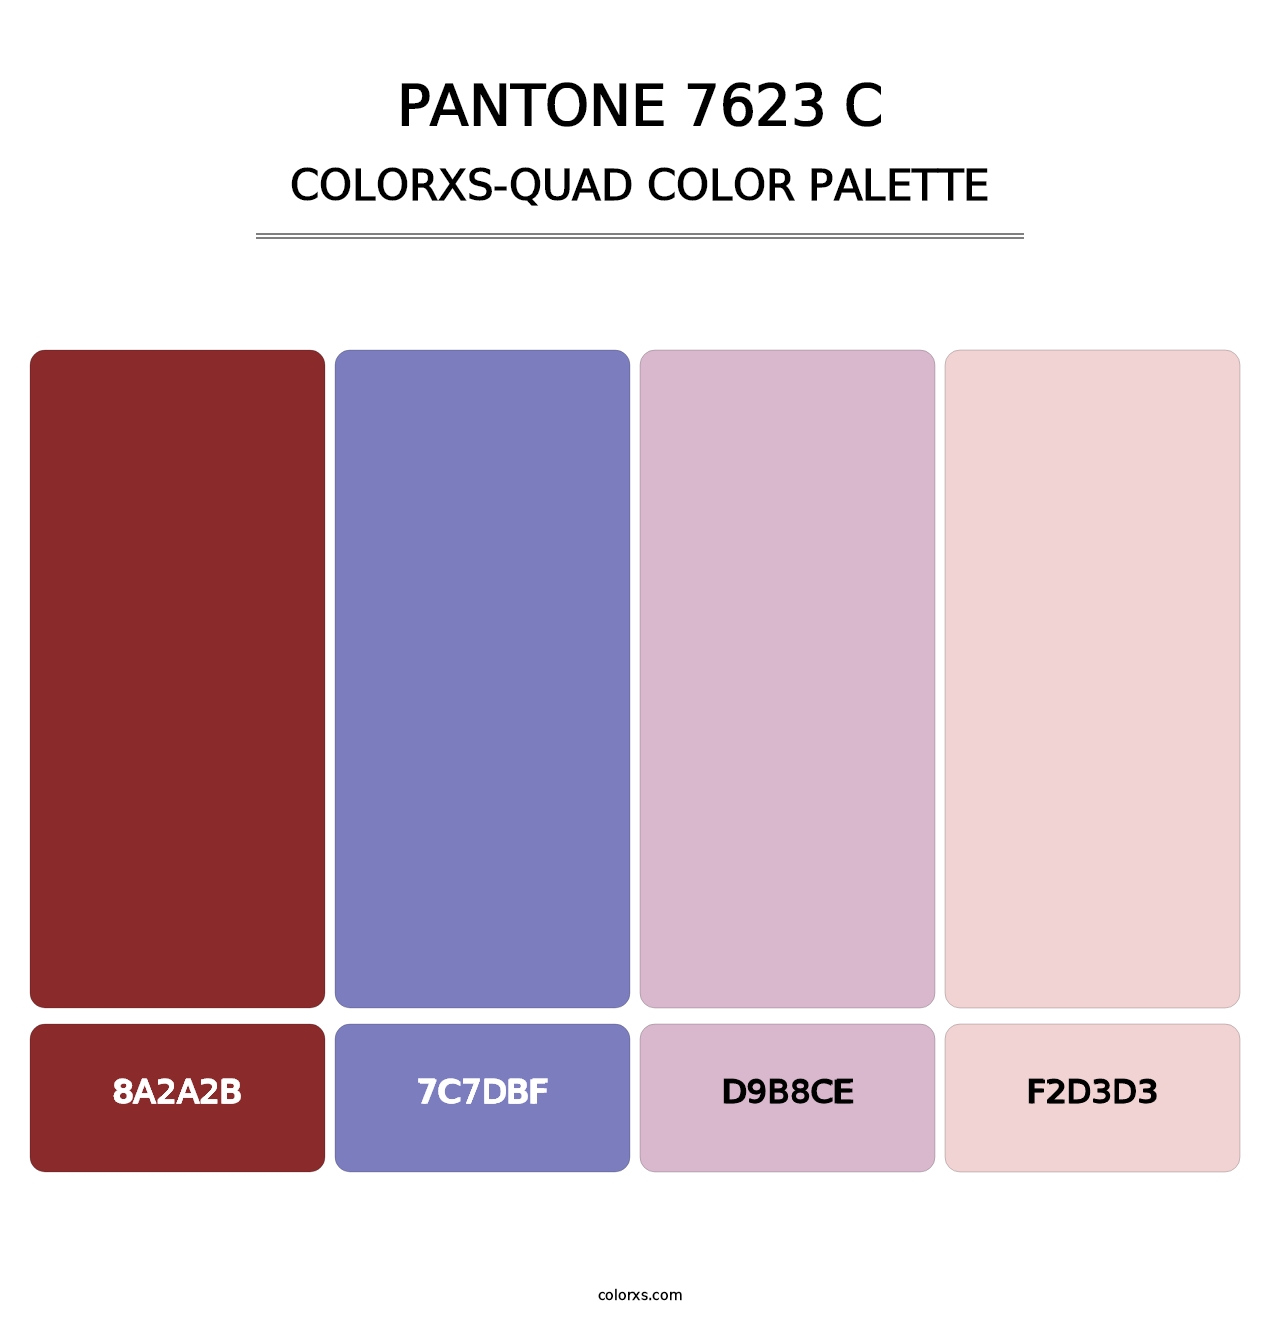 PANTONE 7623 C - Colorxs Quad Palette